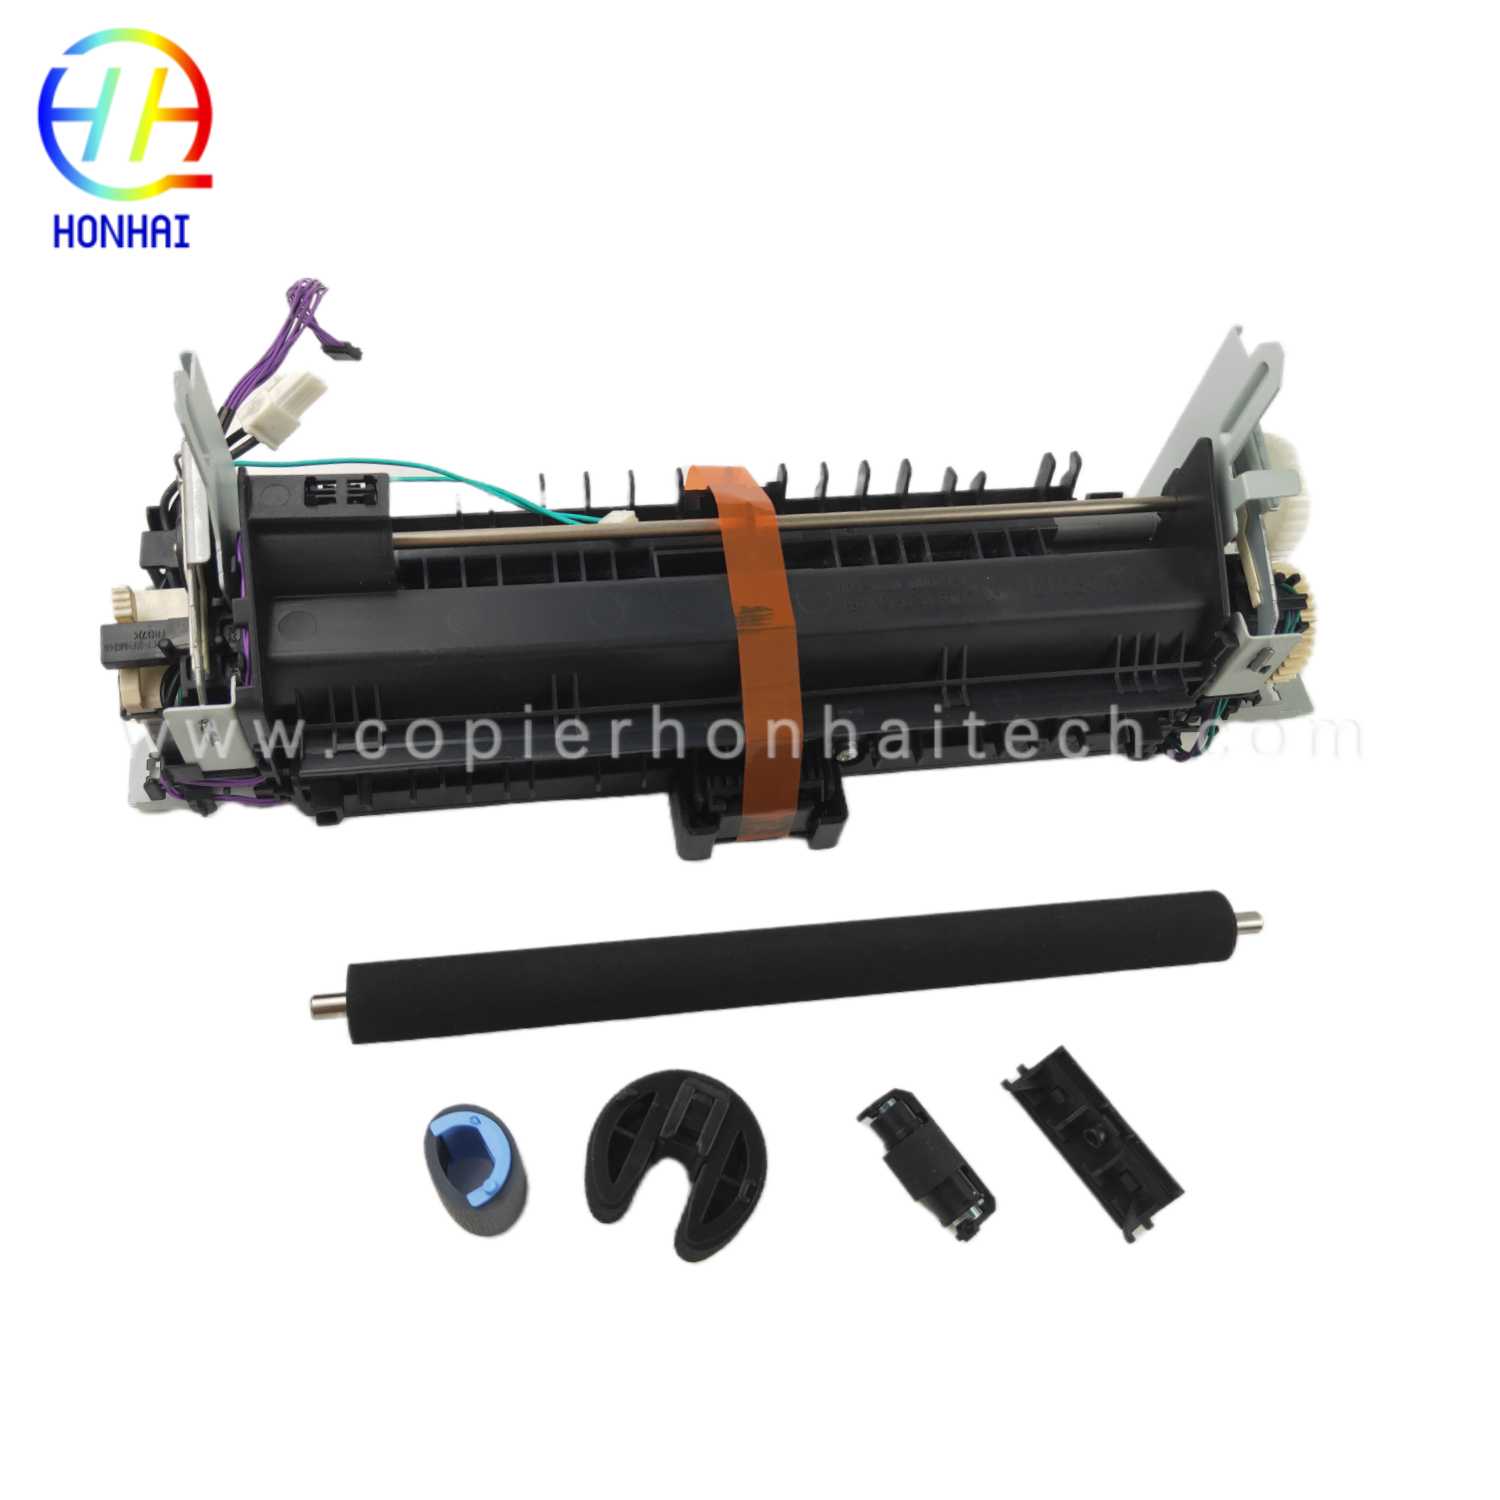 https://www.copierhonhaitech.com/original-95-new-maintenance-kit-for-hp-laserjet-pro-400-color-mfp-m475dn-product/